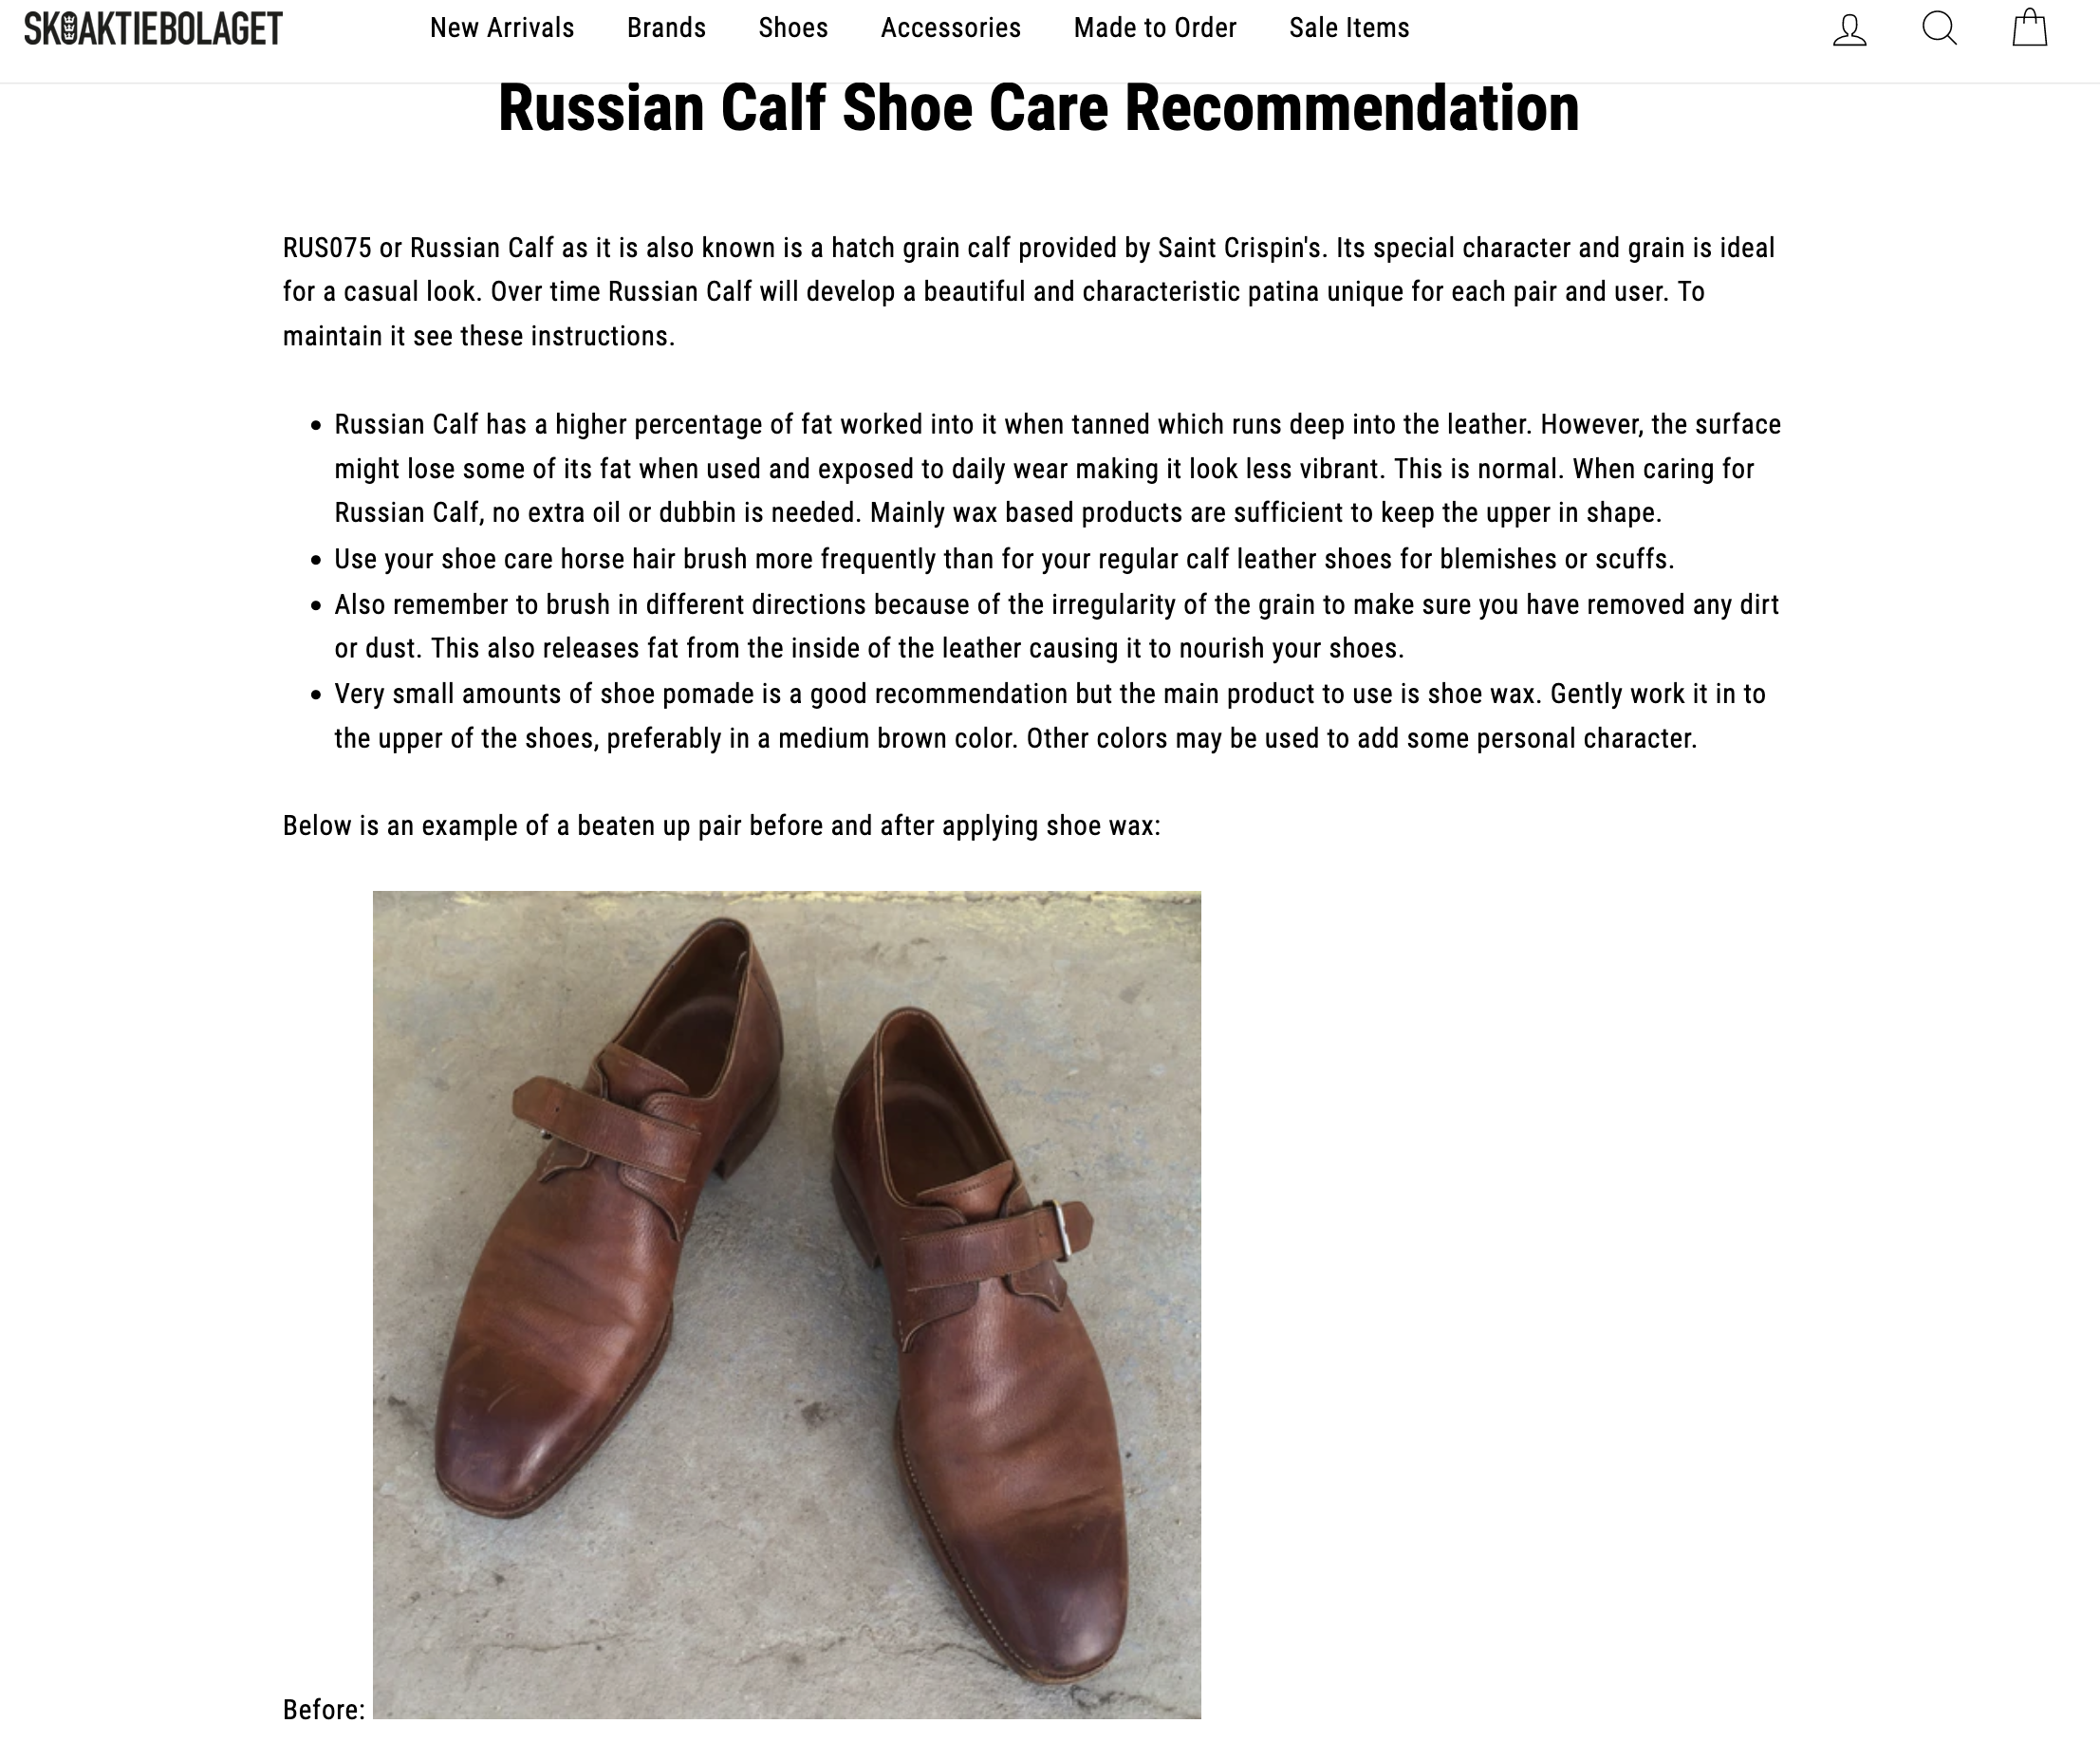 Les recommandations de Skoaktiebolaget quant à l'entretien des chaussures en "cuir de Russie" de St Crispin's. (Source:Skoaktiebolaget)